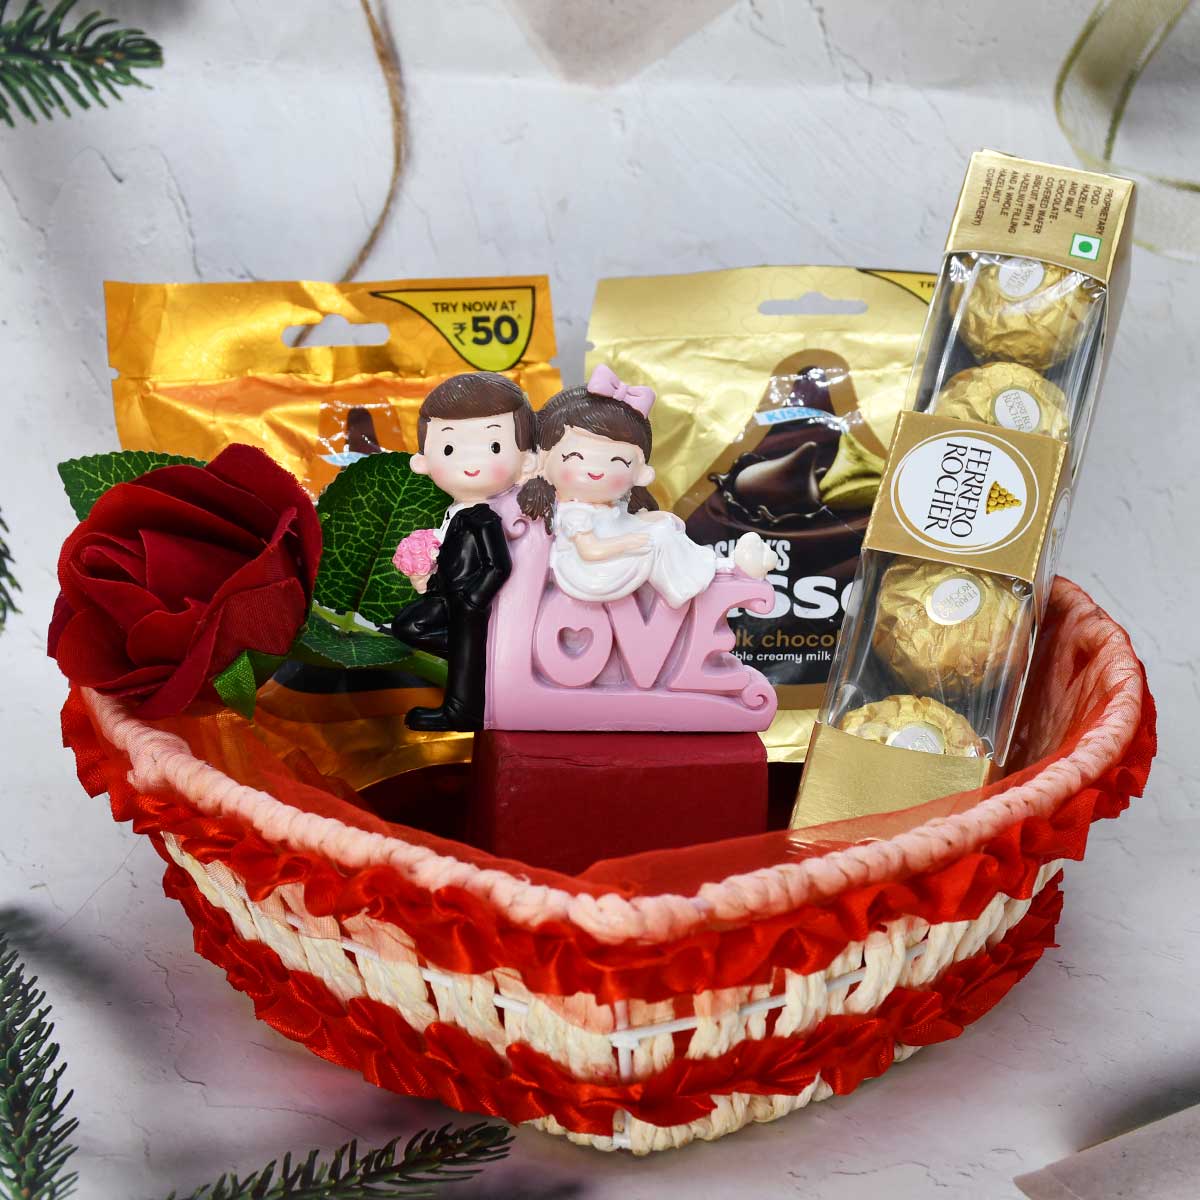 Buy Romantic Love Gift Basket For Lovers